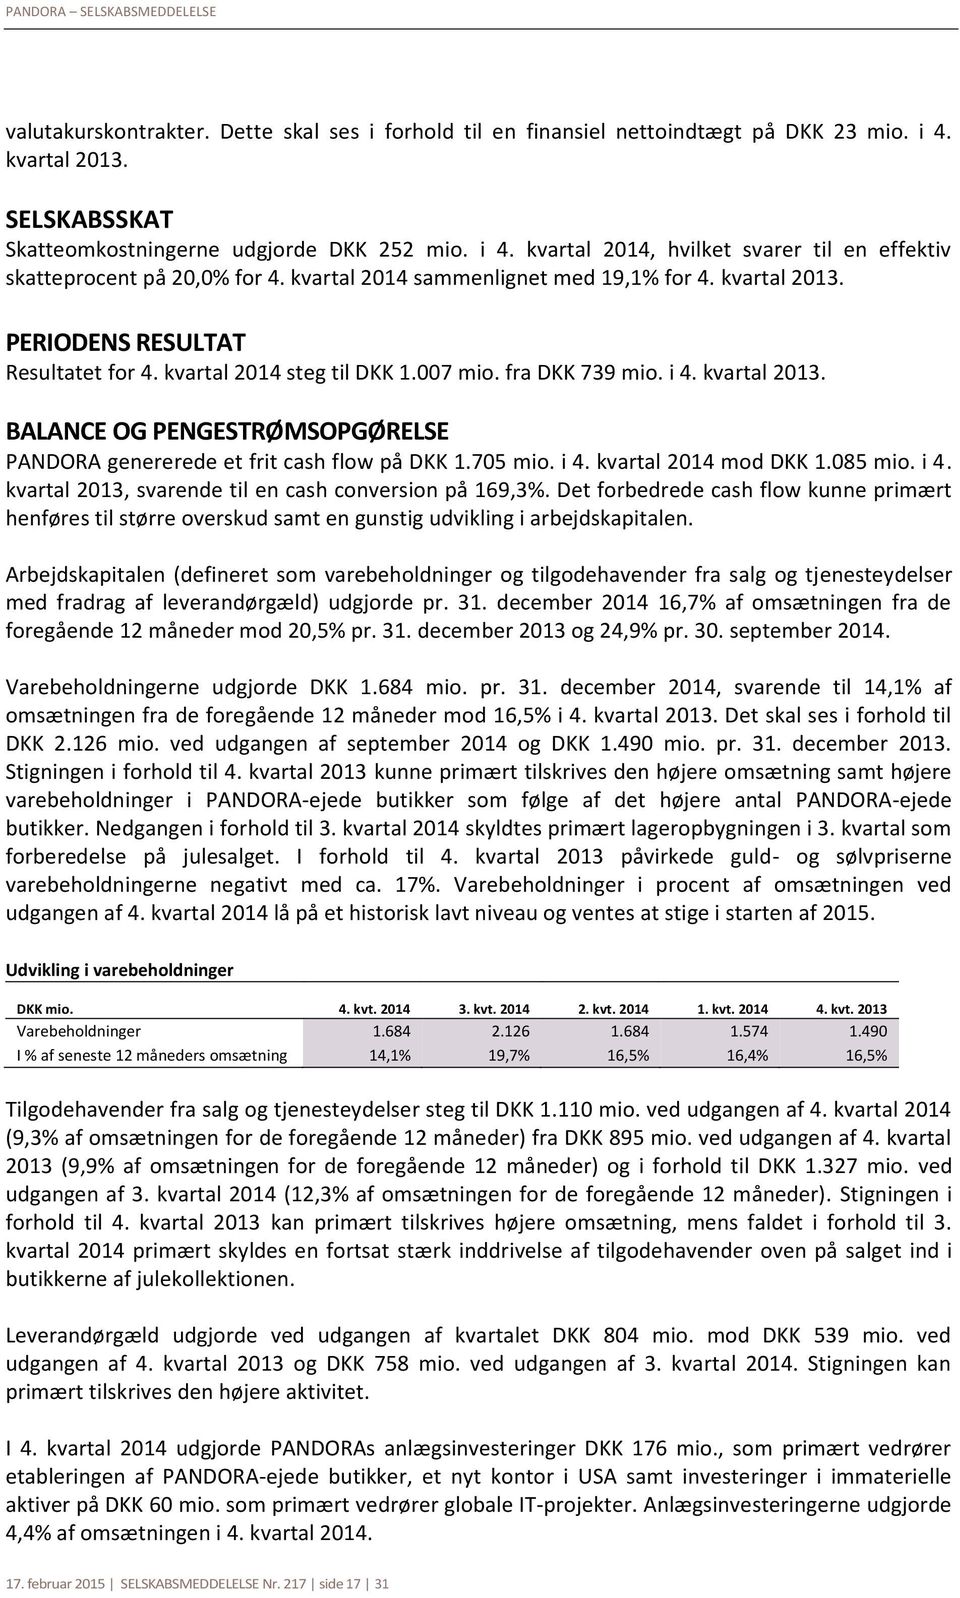 705 mio. i 4. kvartal mod DKK 1.085 mio. i 4. kvartal 2013, svarende til en cash conversion på 169,3%.